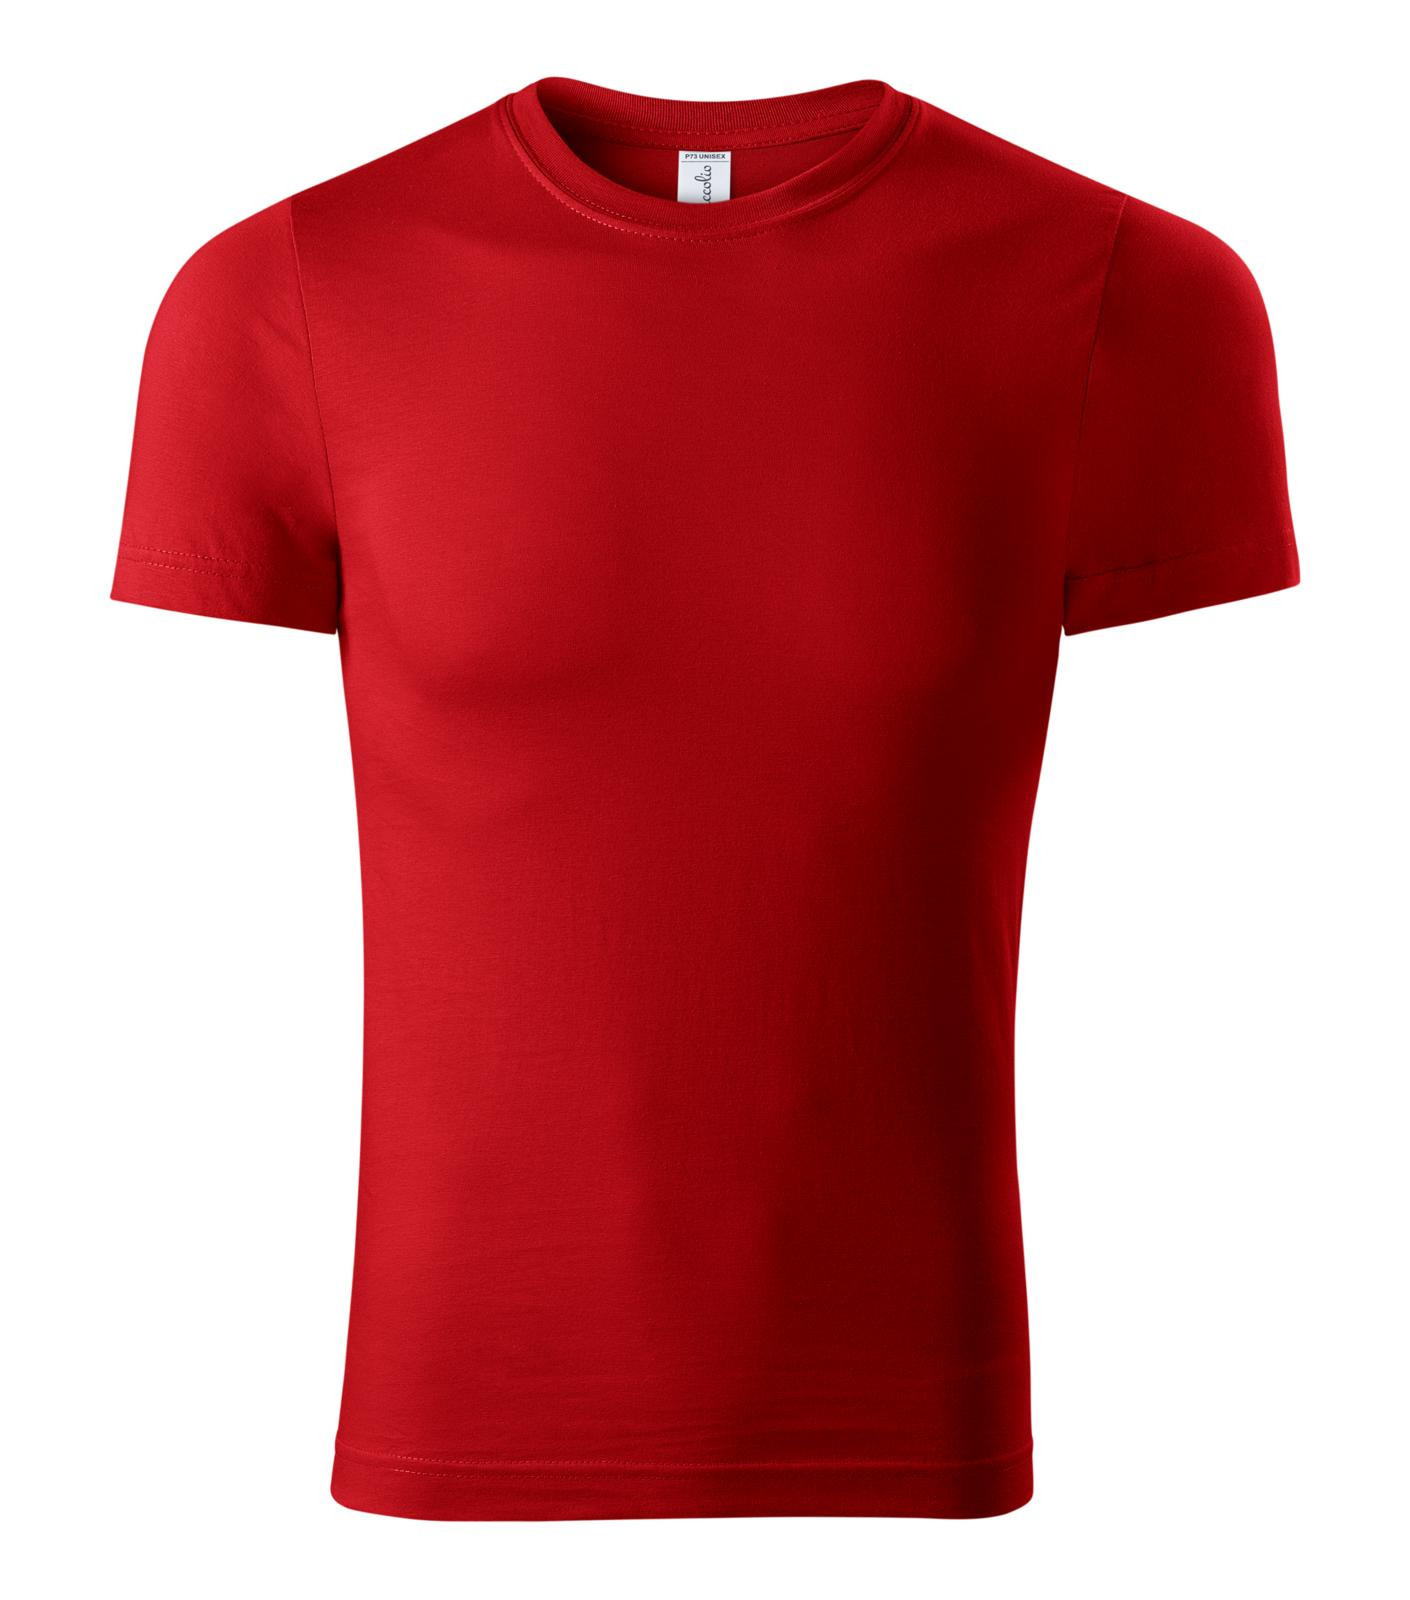 Unisex tričko Piccolio Paint P73 - veľkosť: XXL, farba: červená